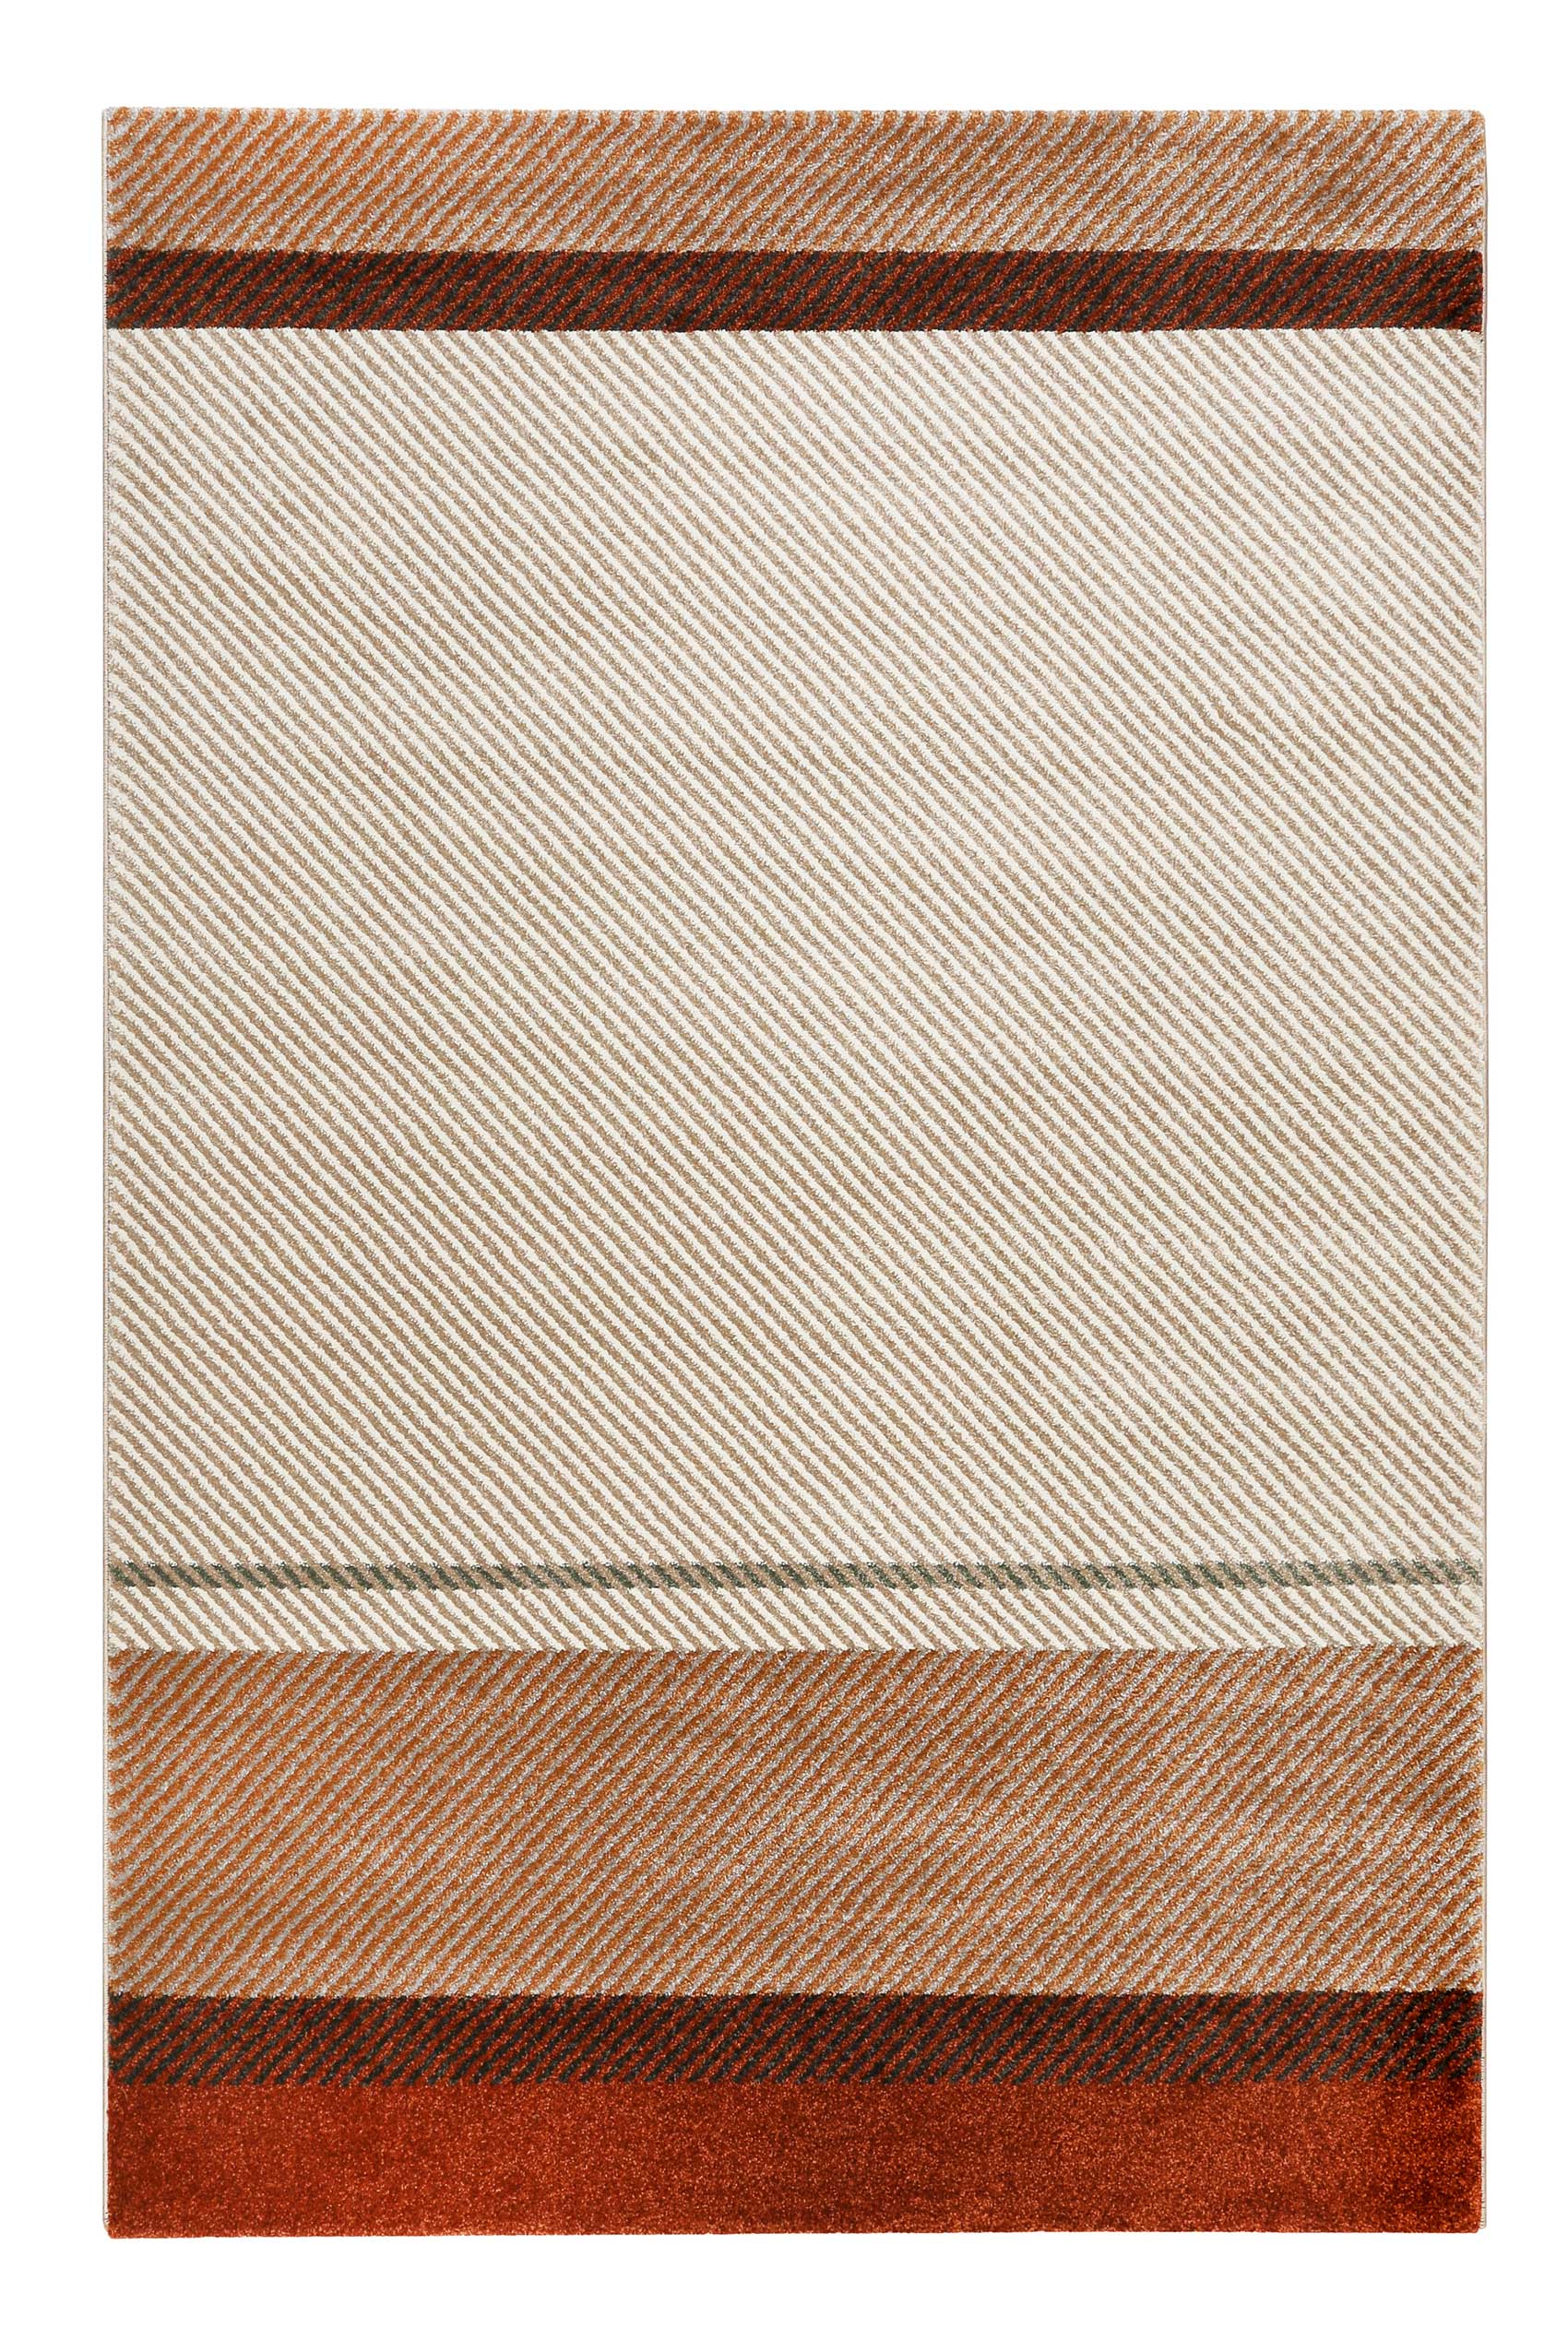 Tapis plat rayé design contemporain beige et brique 133x200